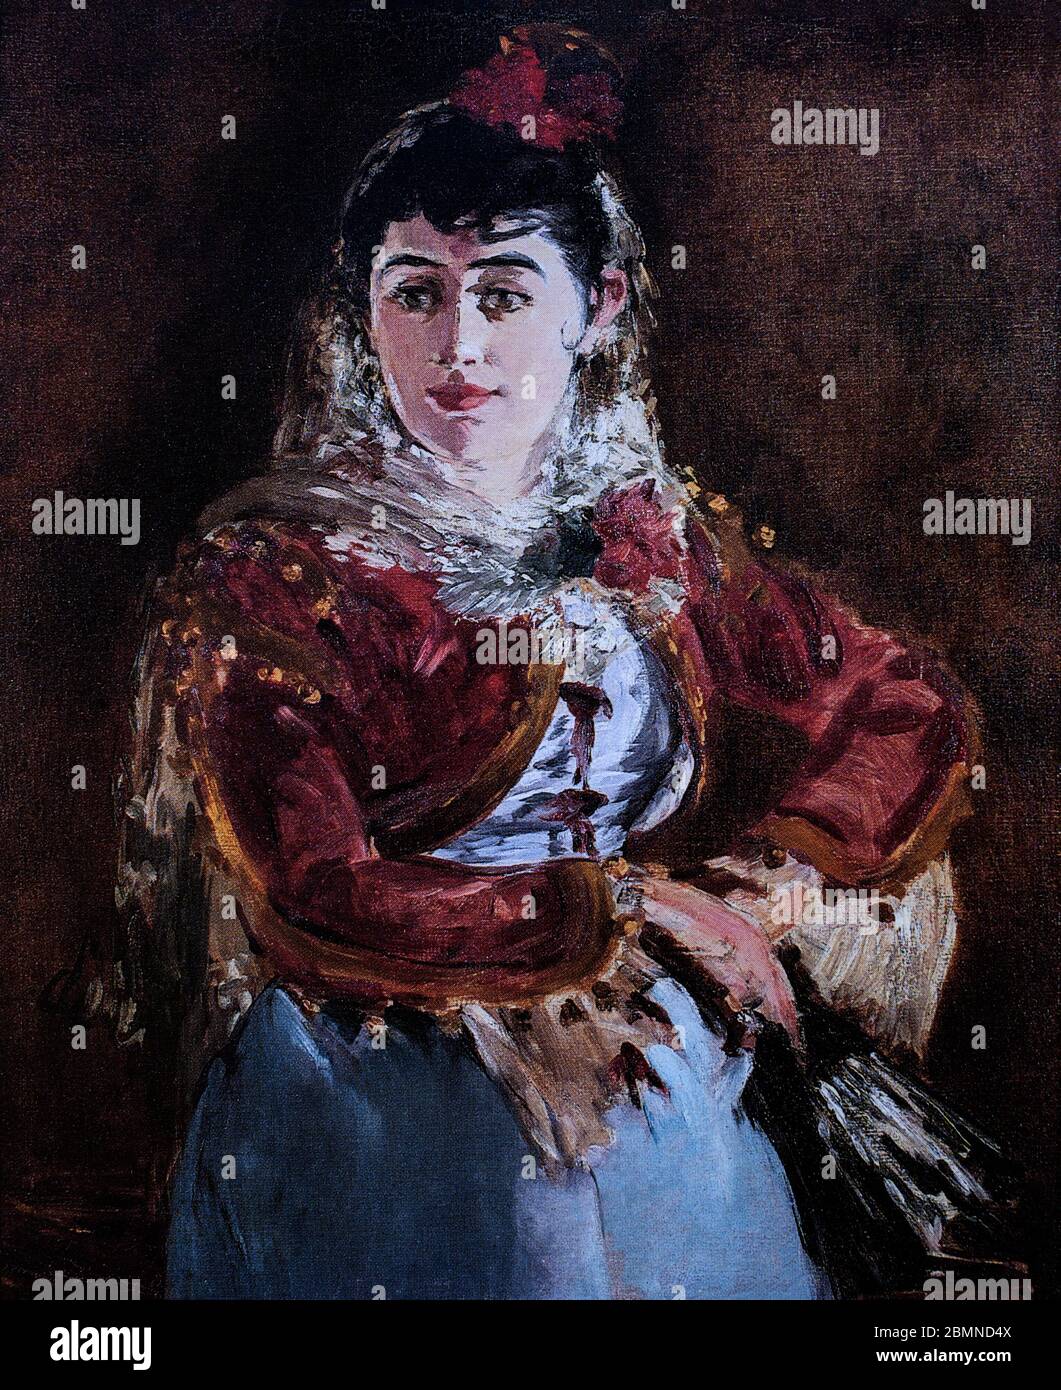 Porträt von Émilie Ambre als Carmen, gemalt 1880 von Édouard Manet (1832-1883), einem Maler der französischen Moderne und einer der ersten Künstler des 19. Jahrhunderts, der das moderne Leben malte, und eine Schlüsselfigur beim Übergang vom Realismus zum Impressionismus. Sein Sujet Émilie Gabrielle Adèle Ambre (1849-1898) war eine französische Opernsängerin, die in Europa und Nordamerika führende Sopranpartien aufführte. Stockfoto